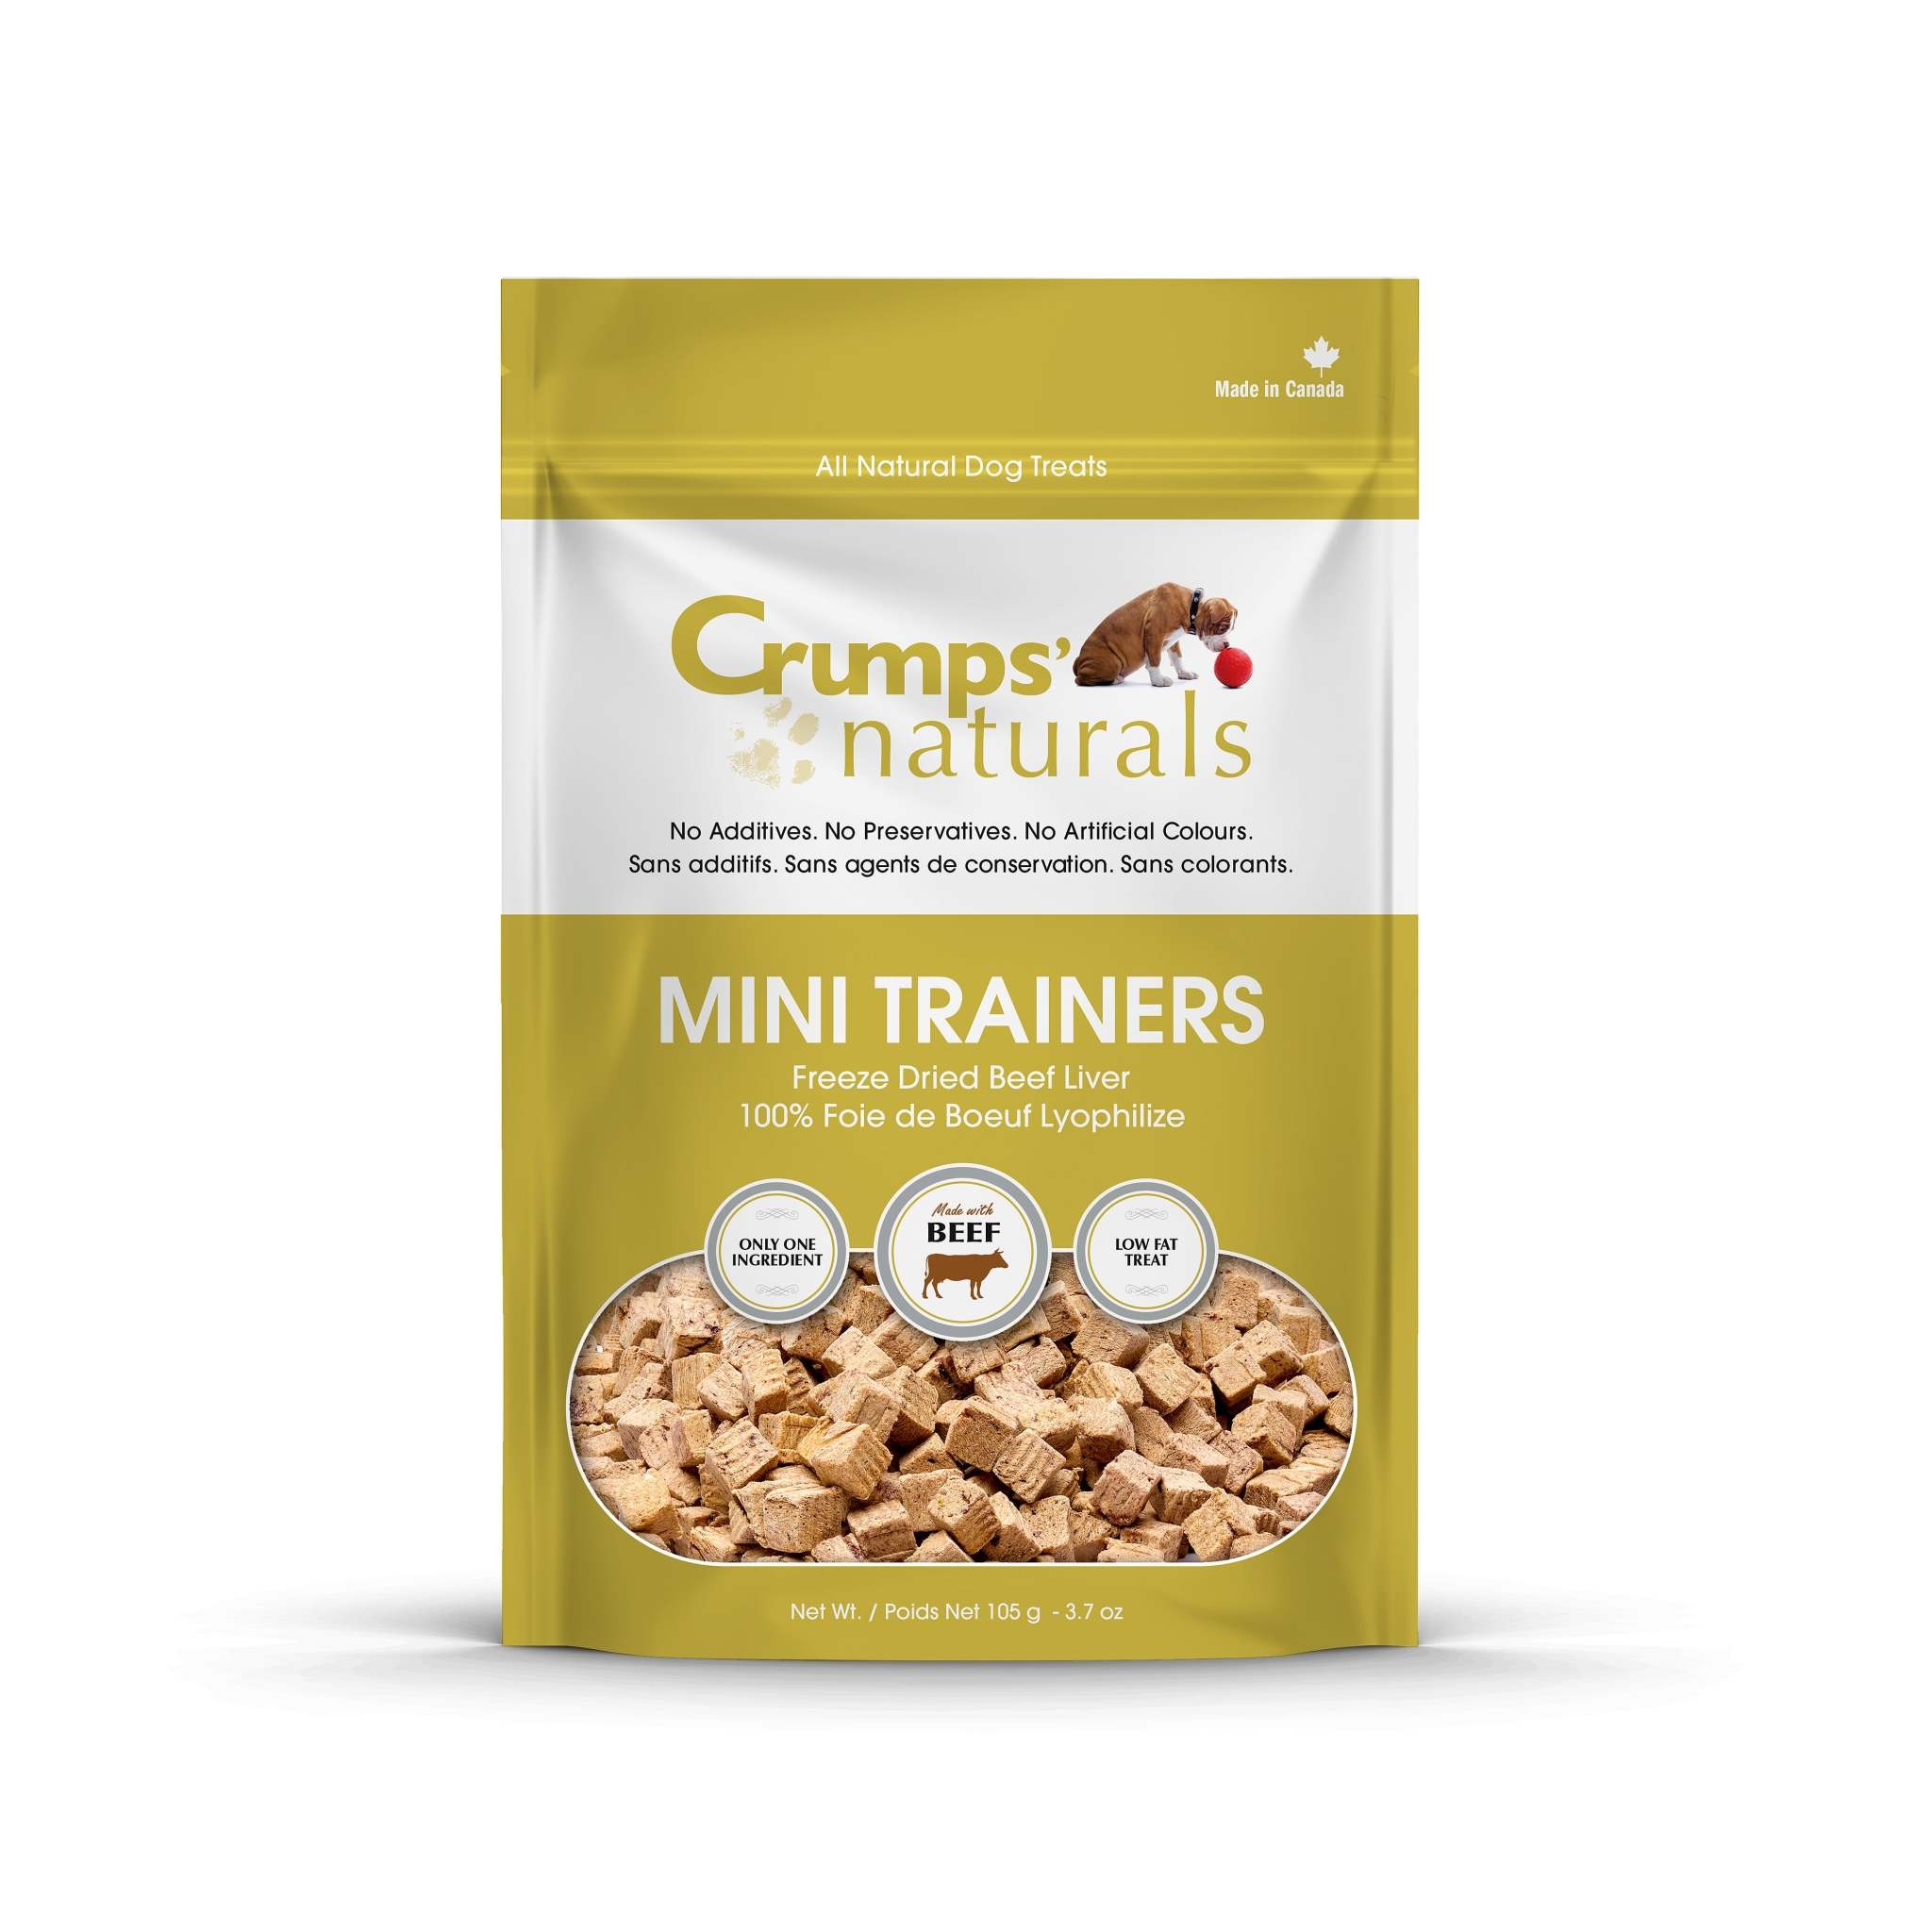 Crumps' Naturals Crumps' Naturals - Mini Trainers Beef  Treat 126g Bag